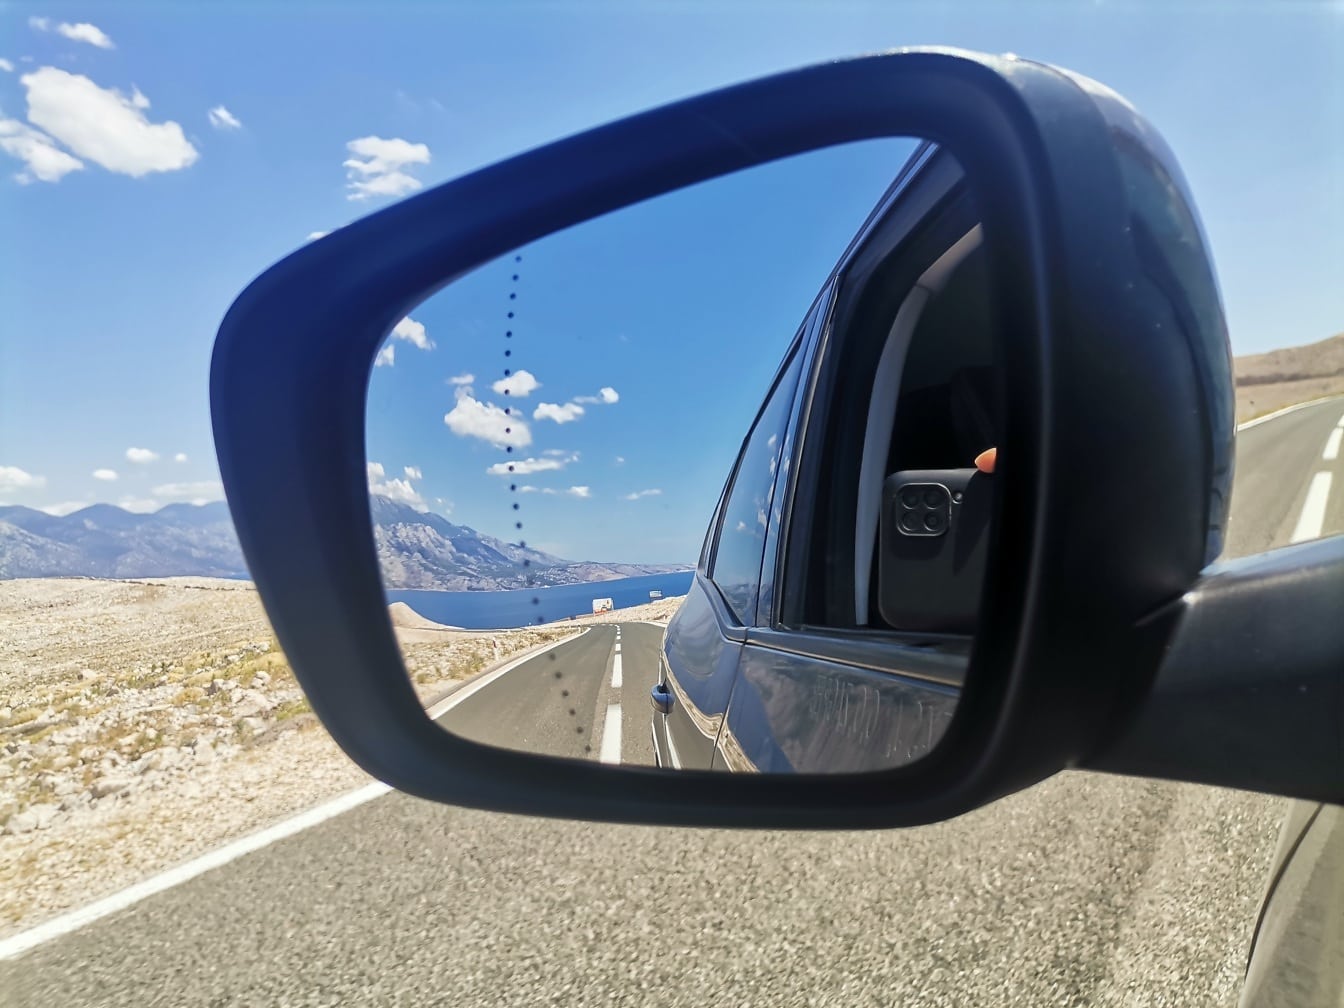 Aszfaltút, út és tengeri tájkép tükröződése az autó tükrében